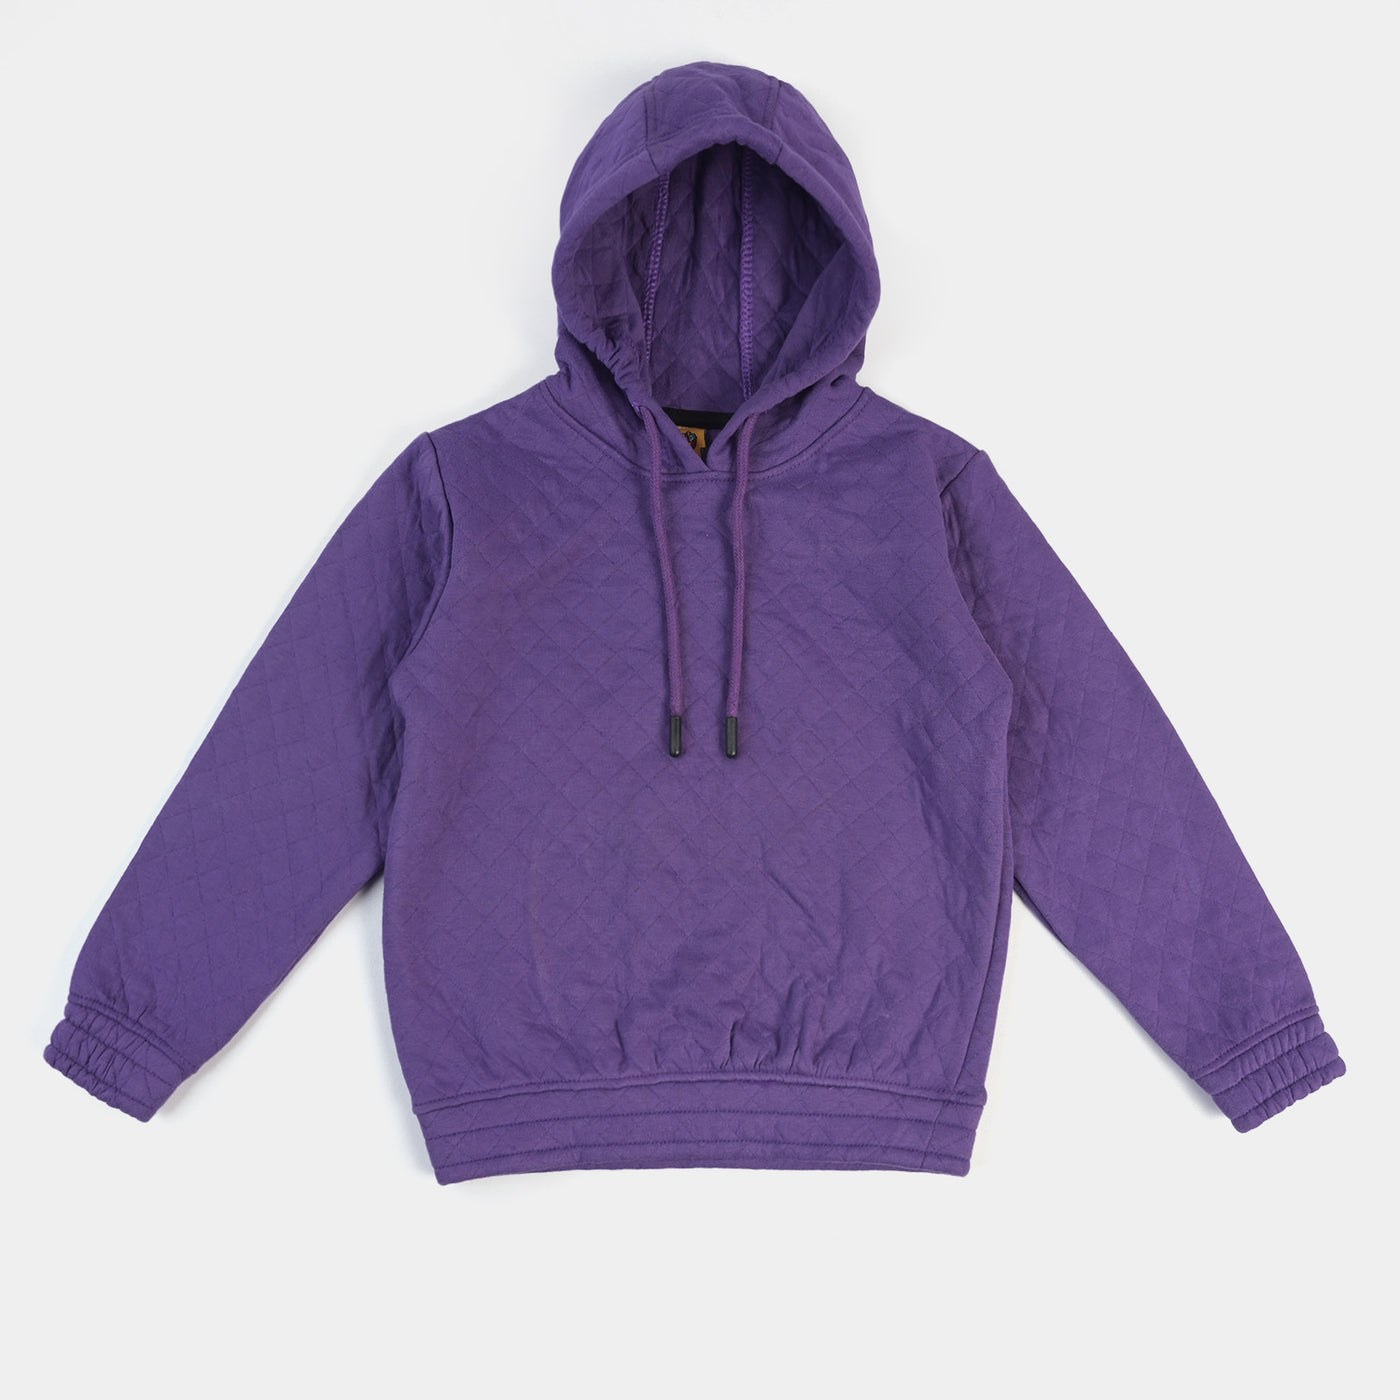 Girls Fleece 2-Piece Suit Quilted-Purple